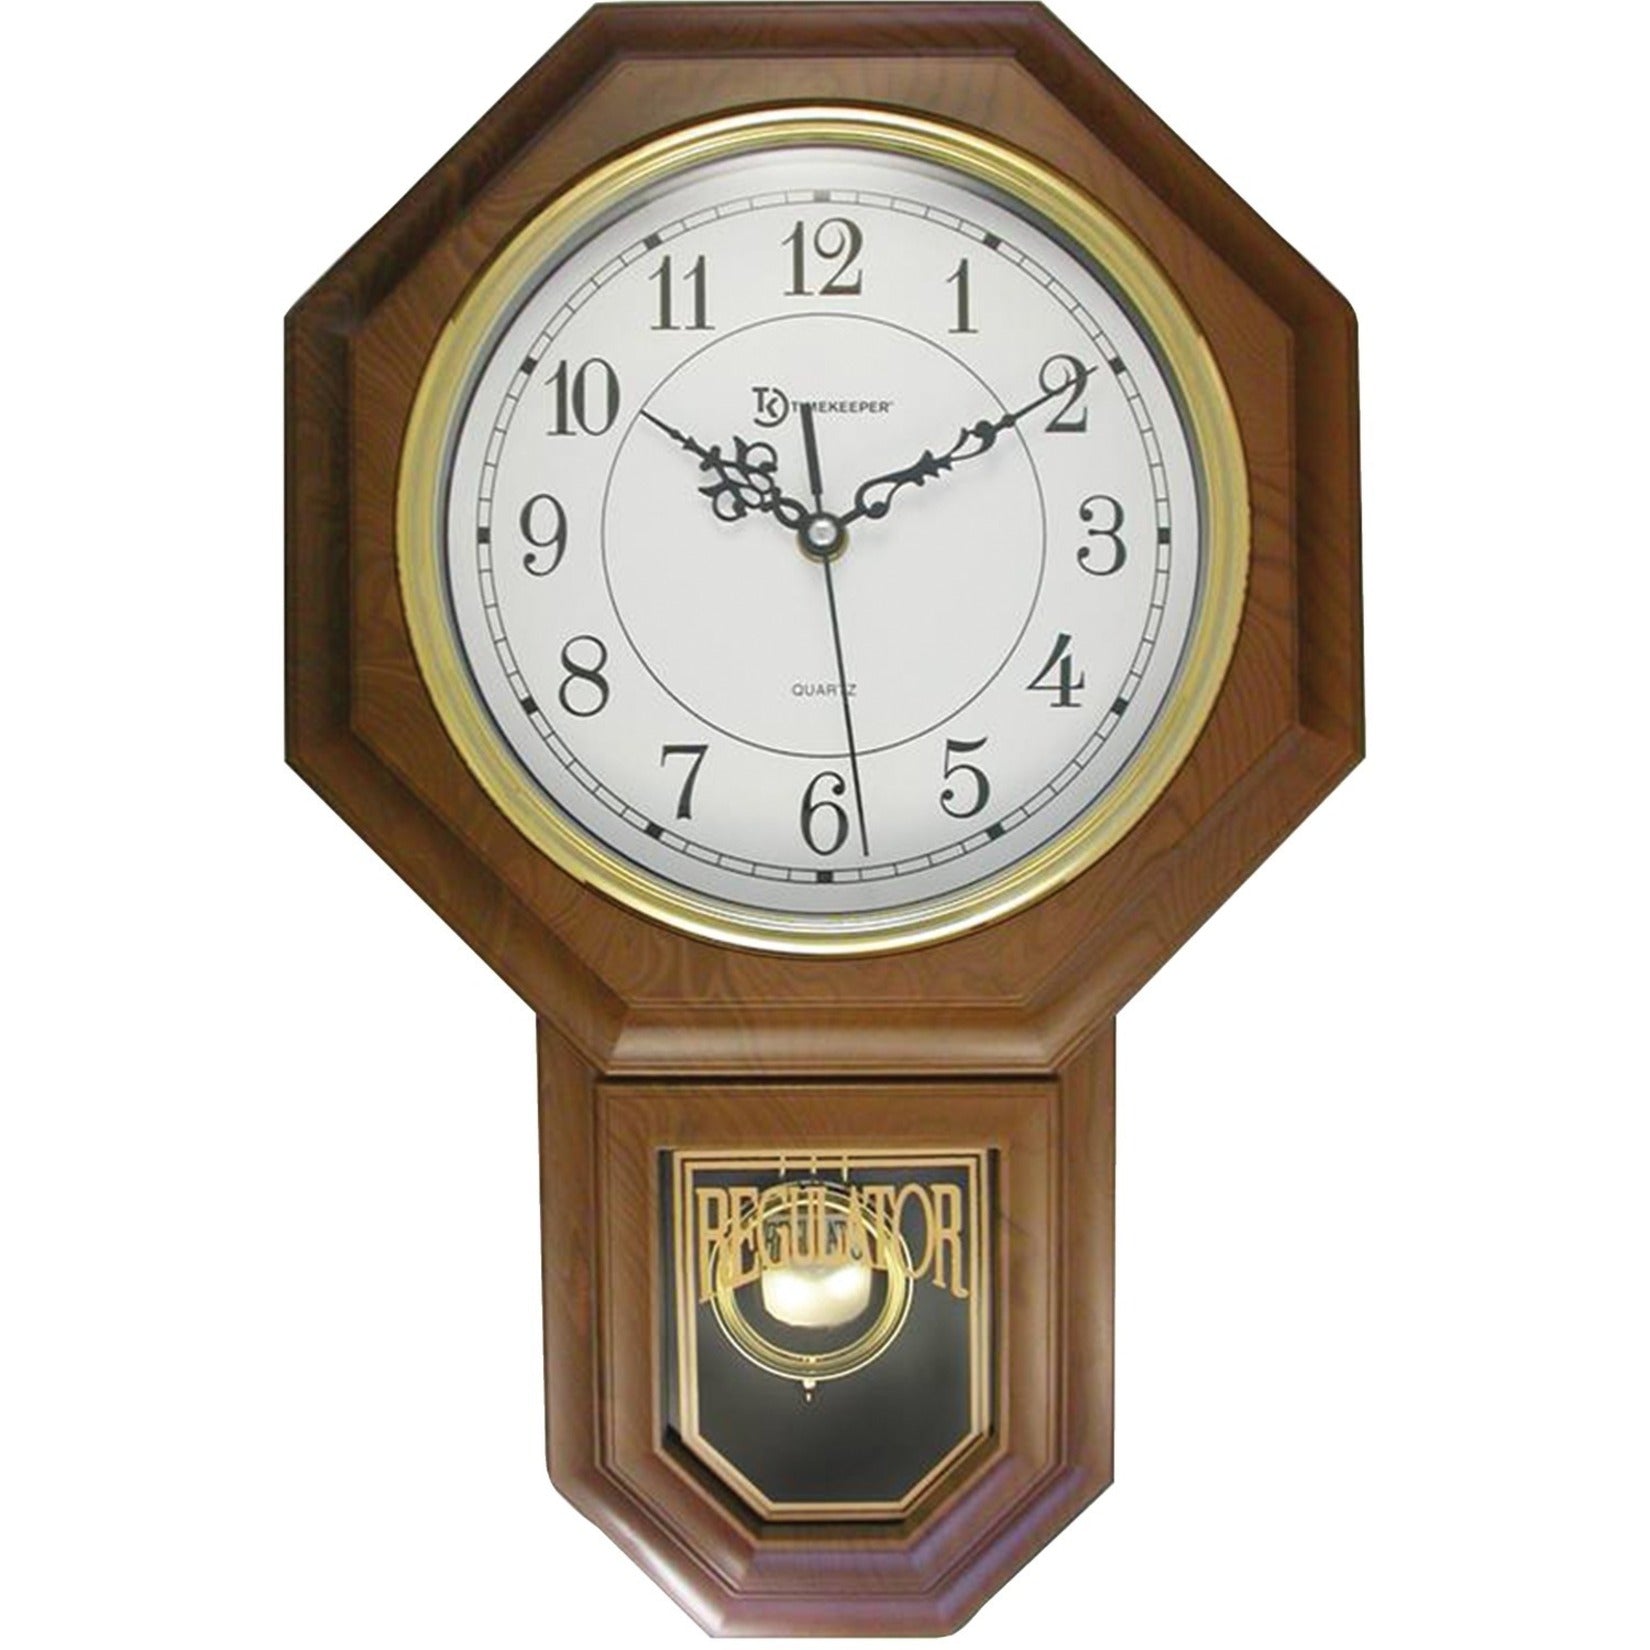 Timekeeper 180WAGM Essex 18.75" Modern Pendulum Wall Clock, Faux Wood, Walnut Finish